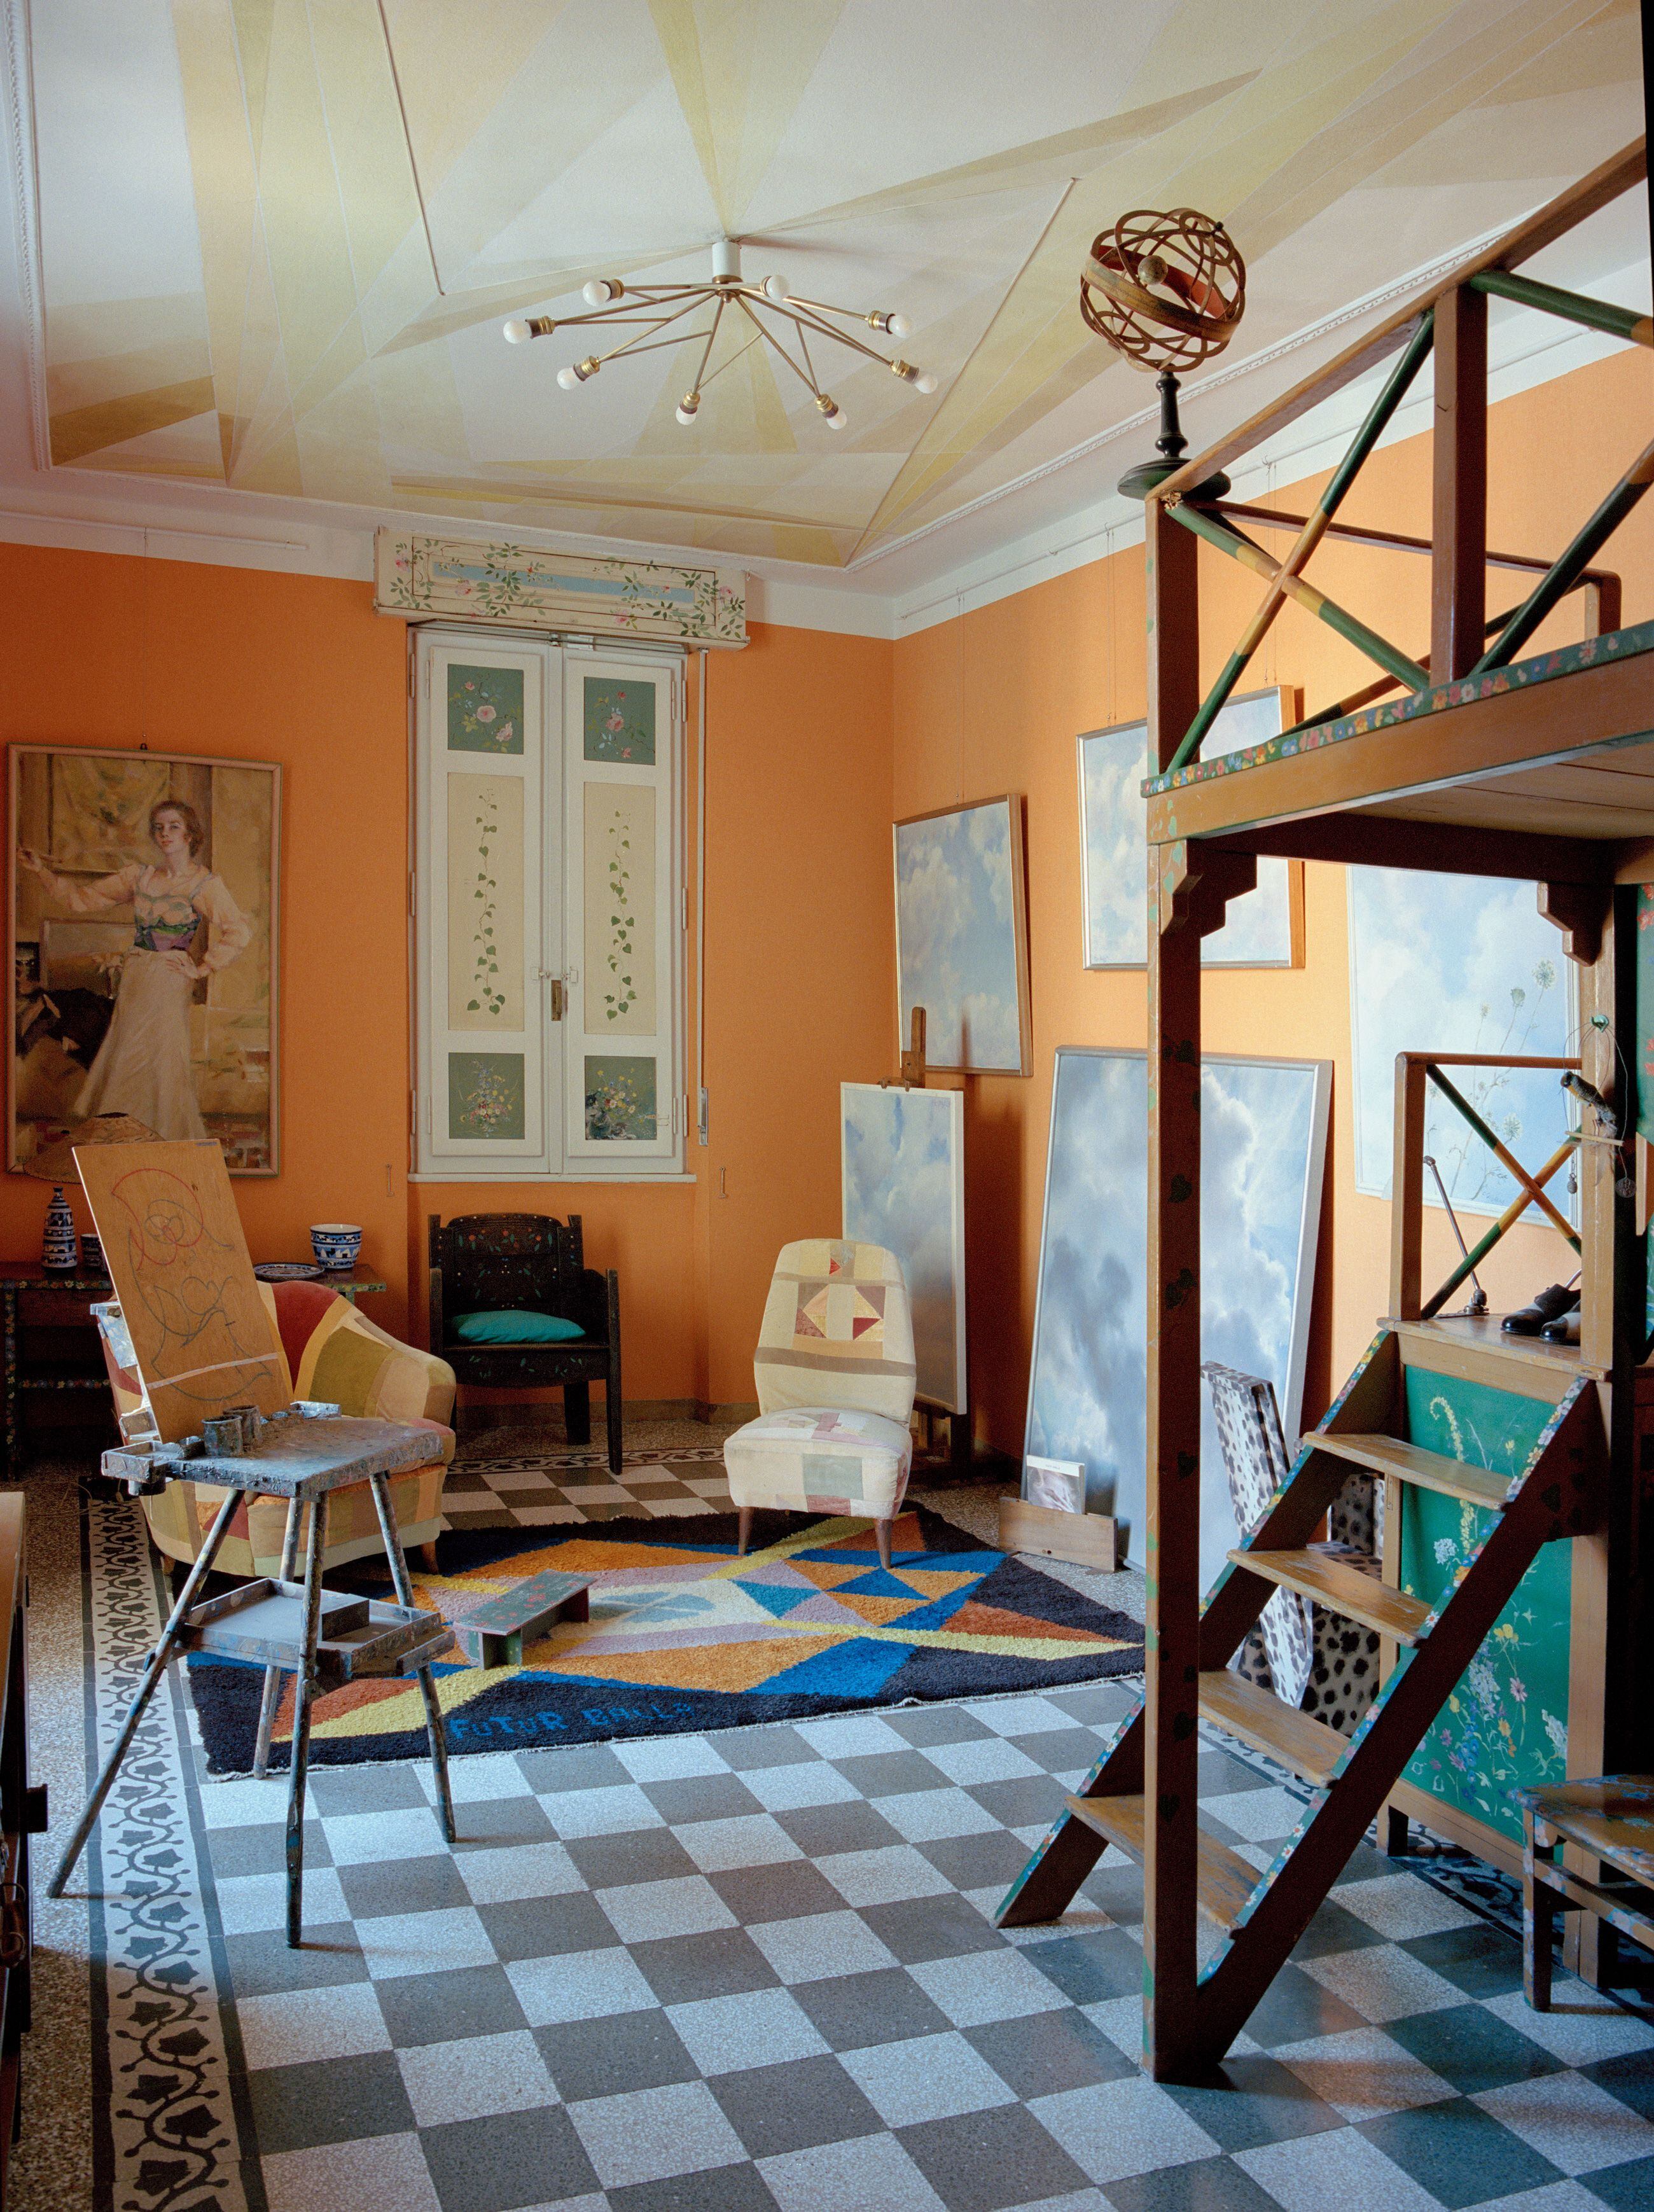 La habitación de su hija Elica, con el pequeño palco que le construyó, y detalles del techo, adornado con formas geométricas. El artista murió en esta estancia de la casa.